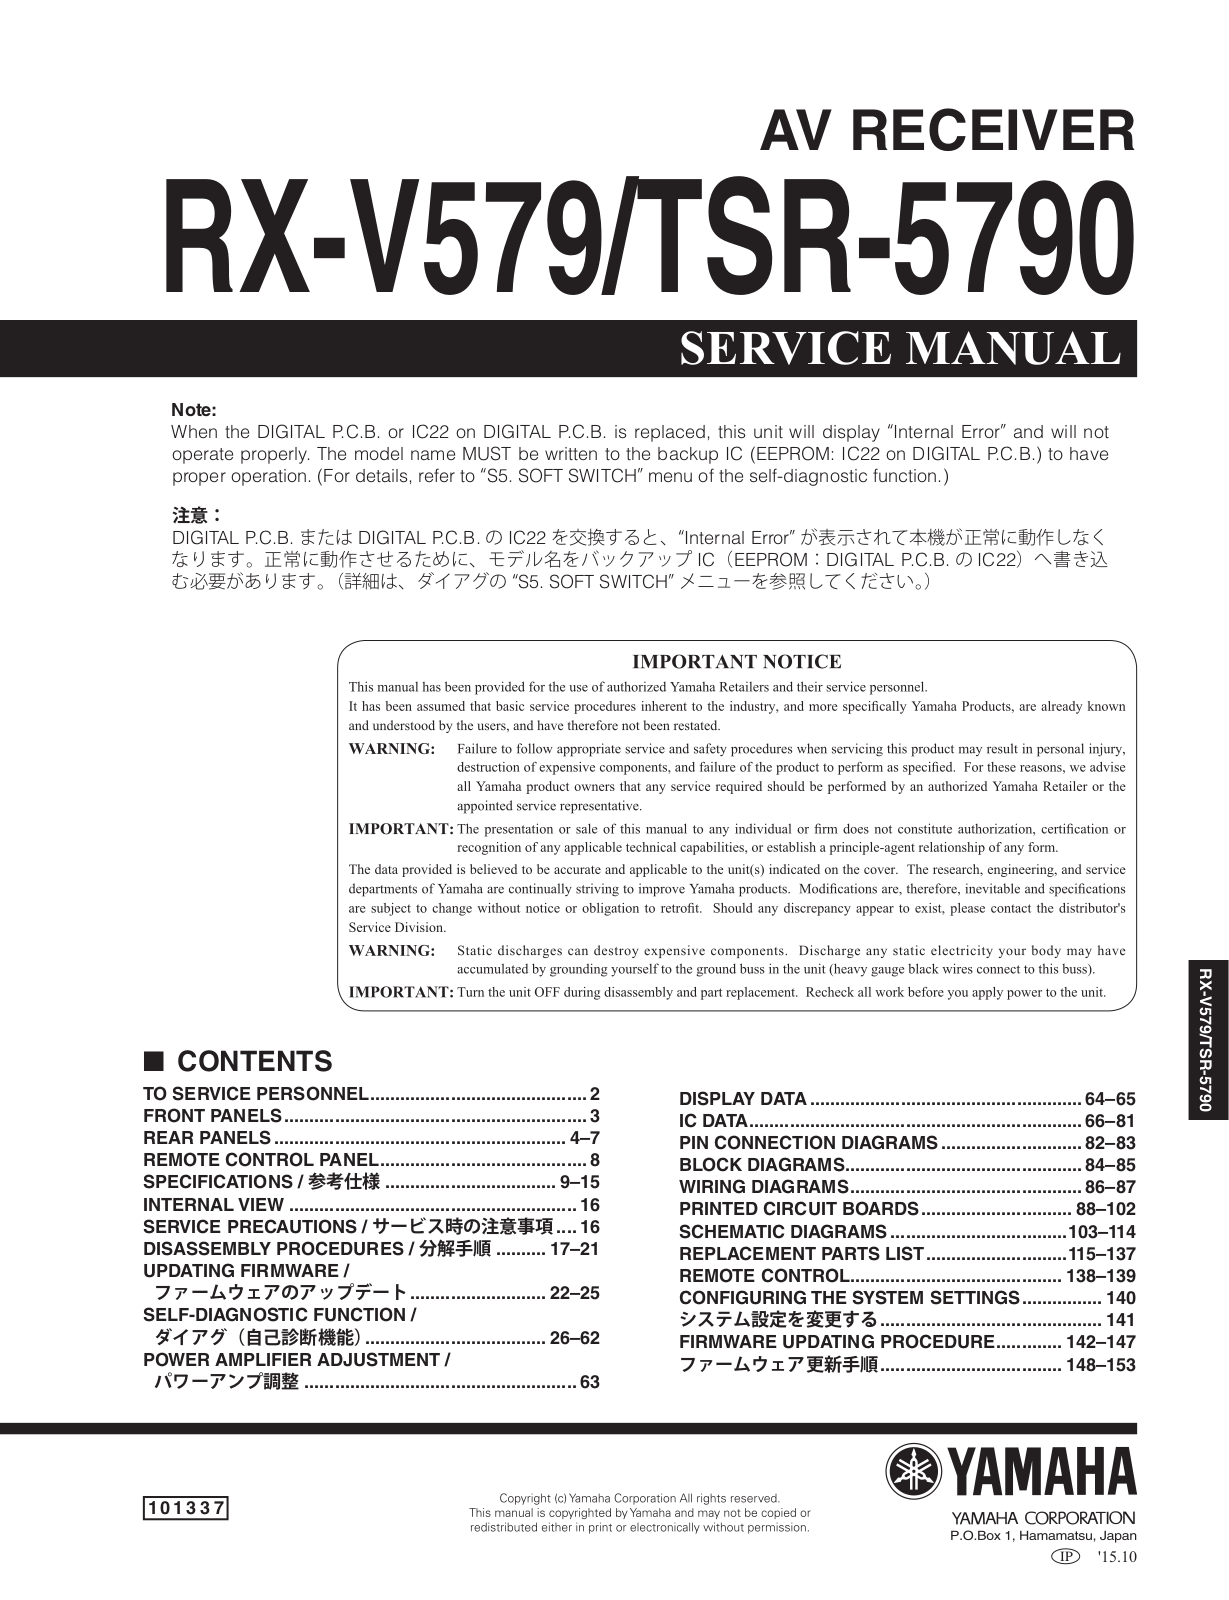 Yamaha RX-V579, TSR-5790 Service manual